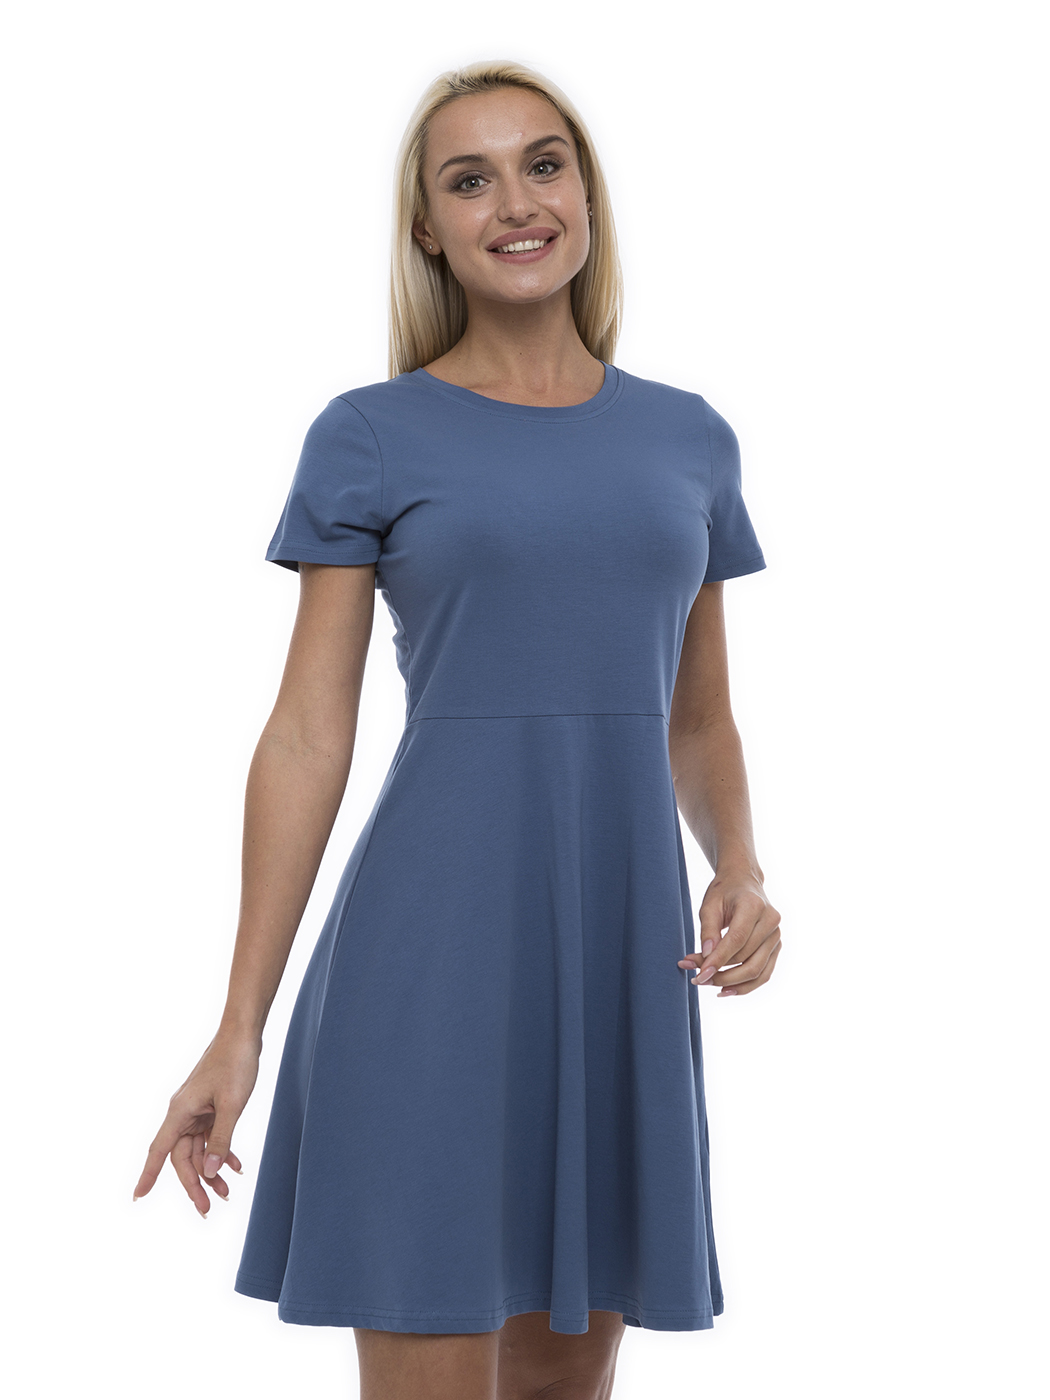 Платье женское Lunarable kelb002_ голубое 50